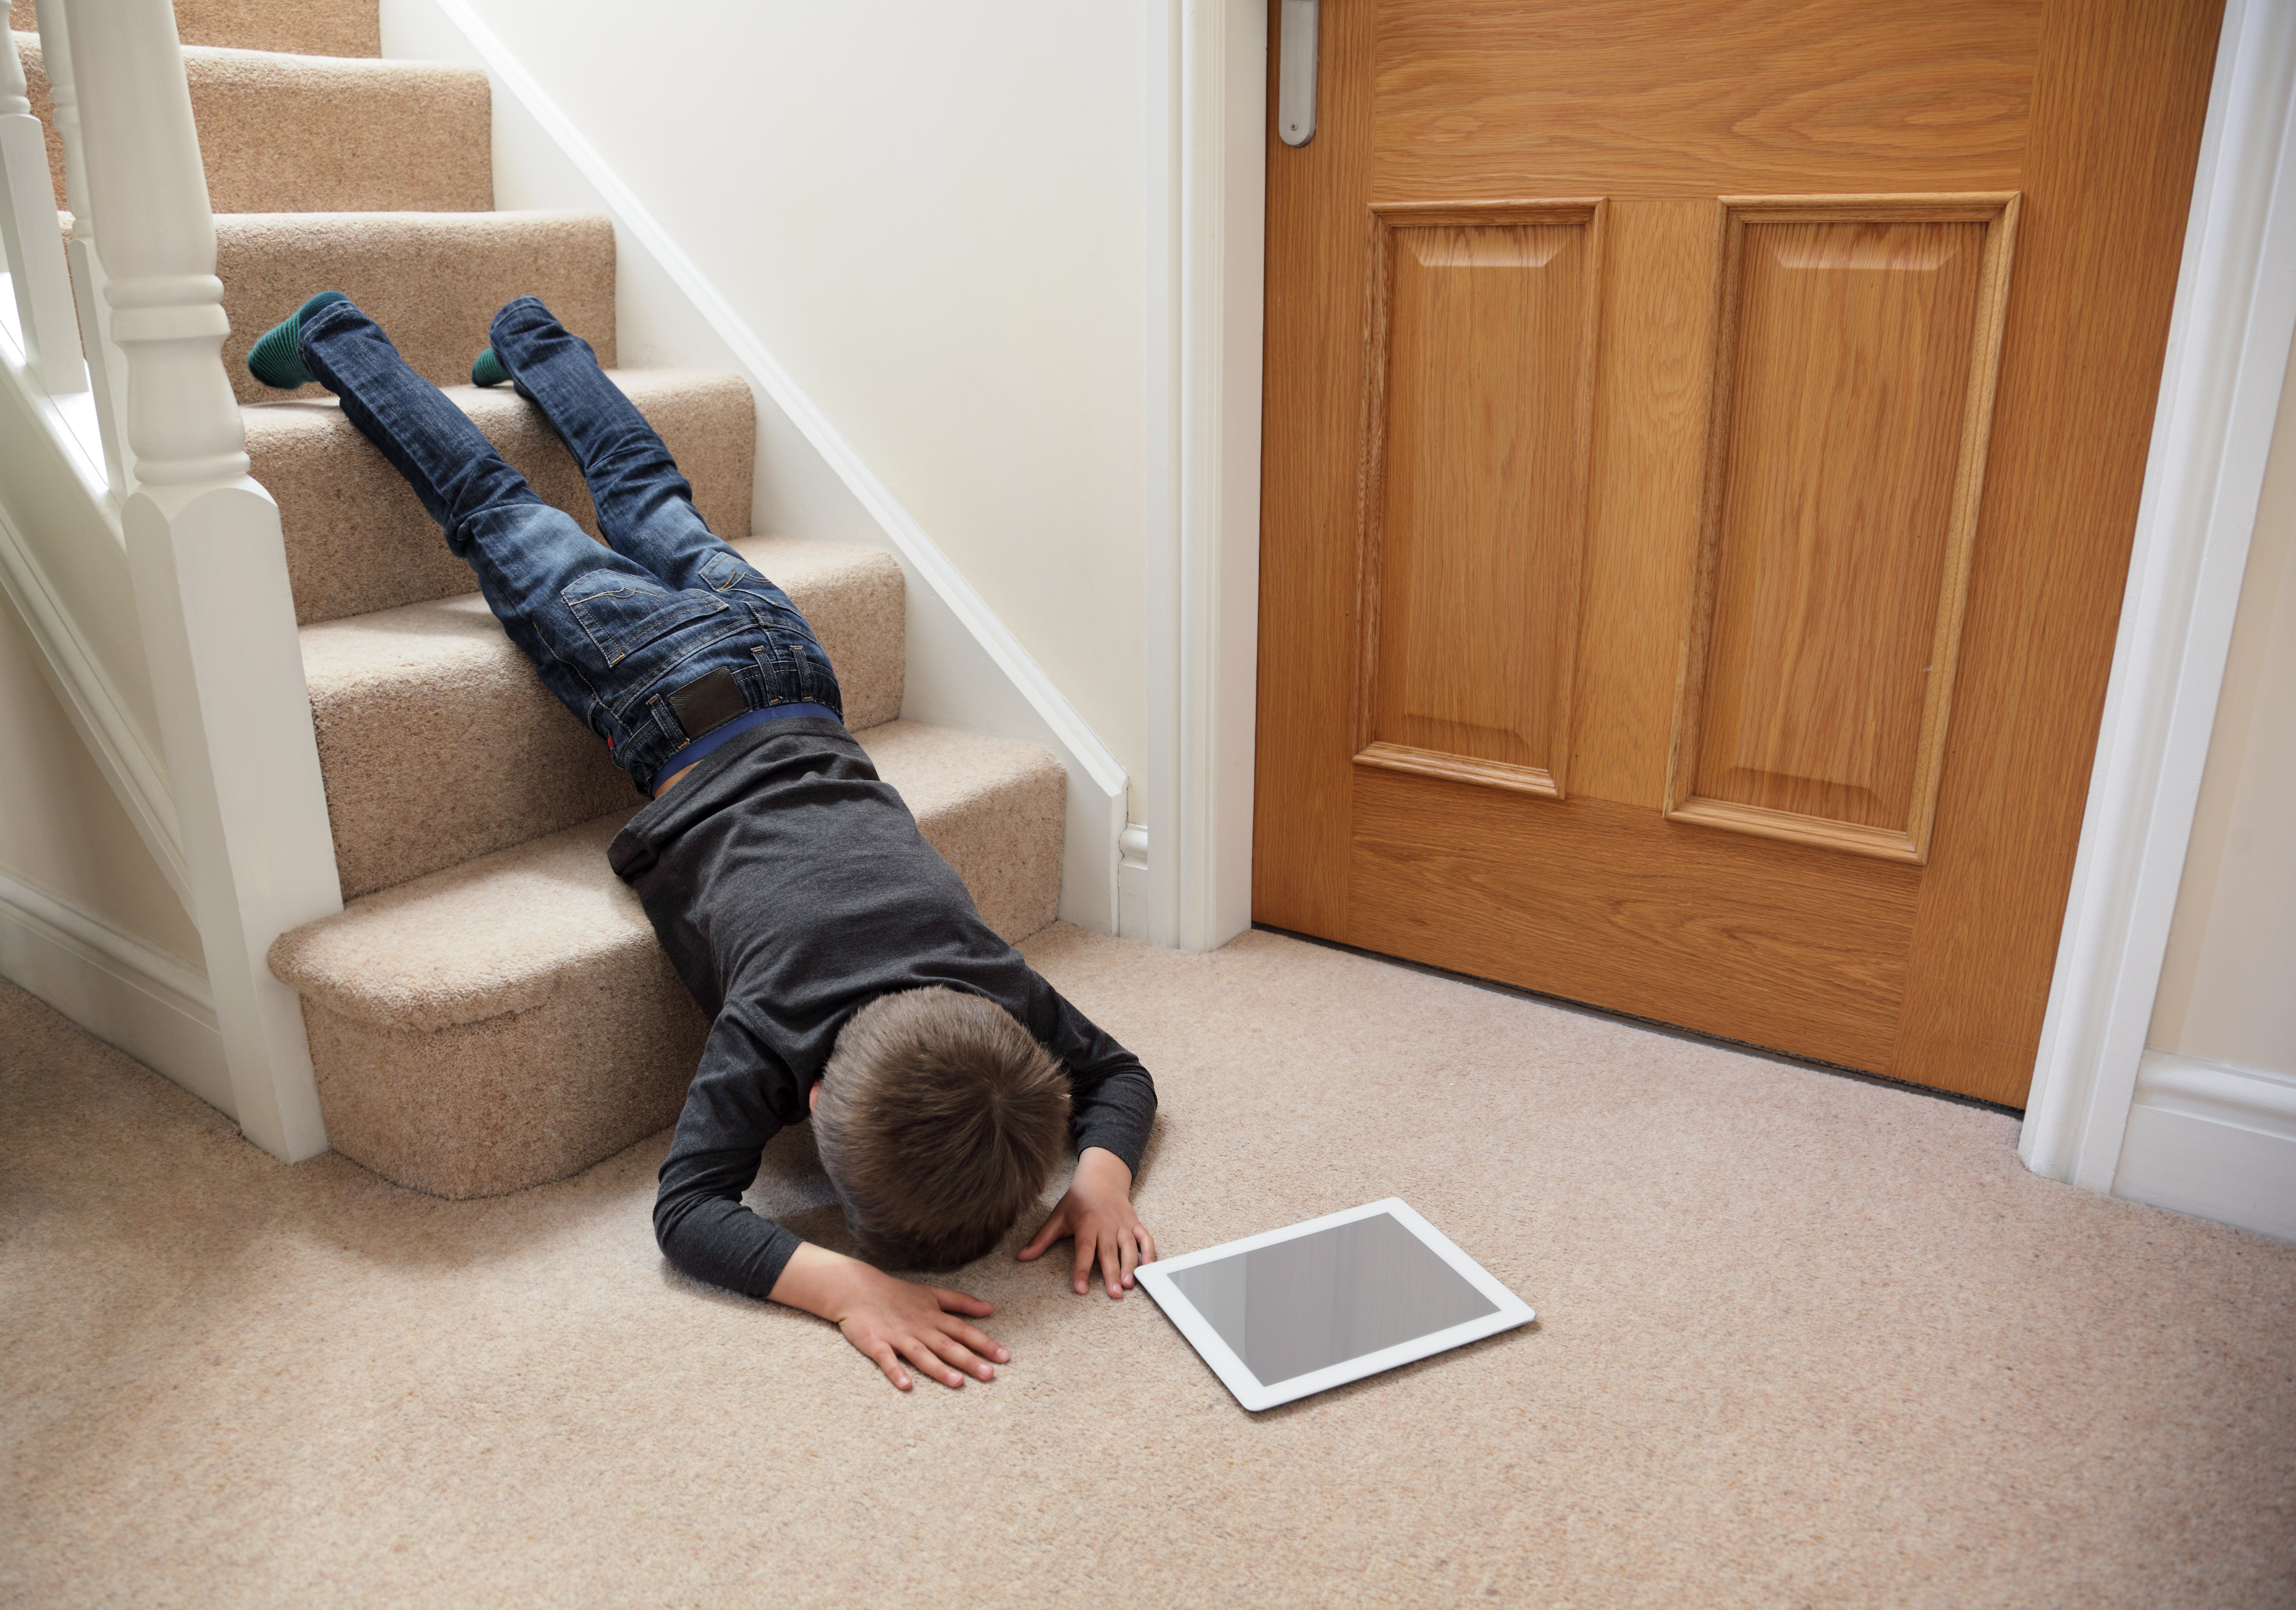 Начала часто падать. Мальчик падает с лестницы. Человек оступился на лестнице.